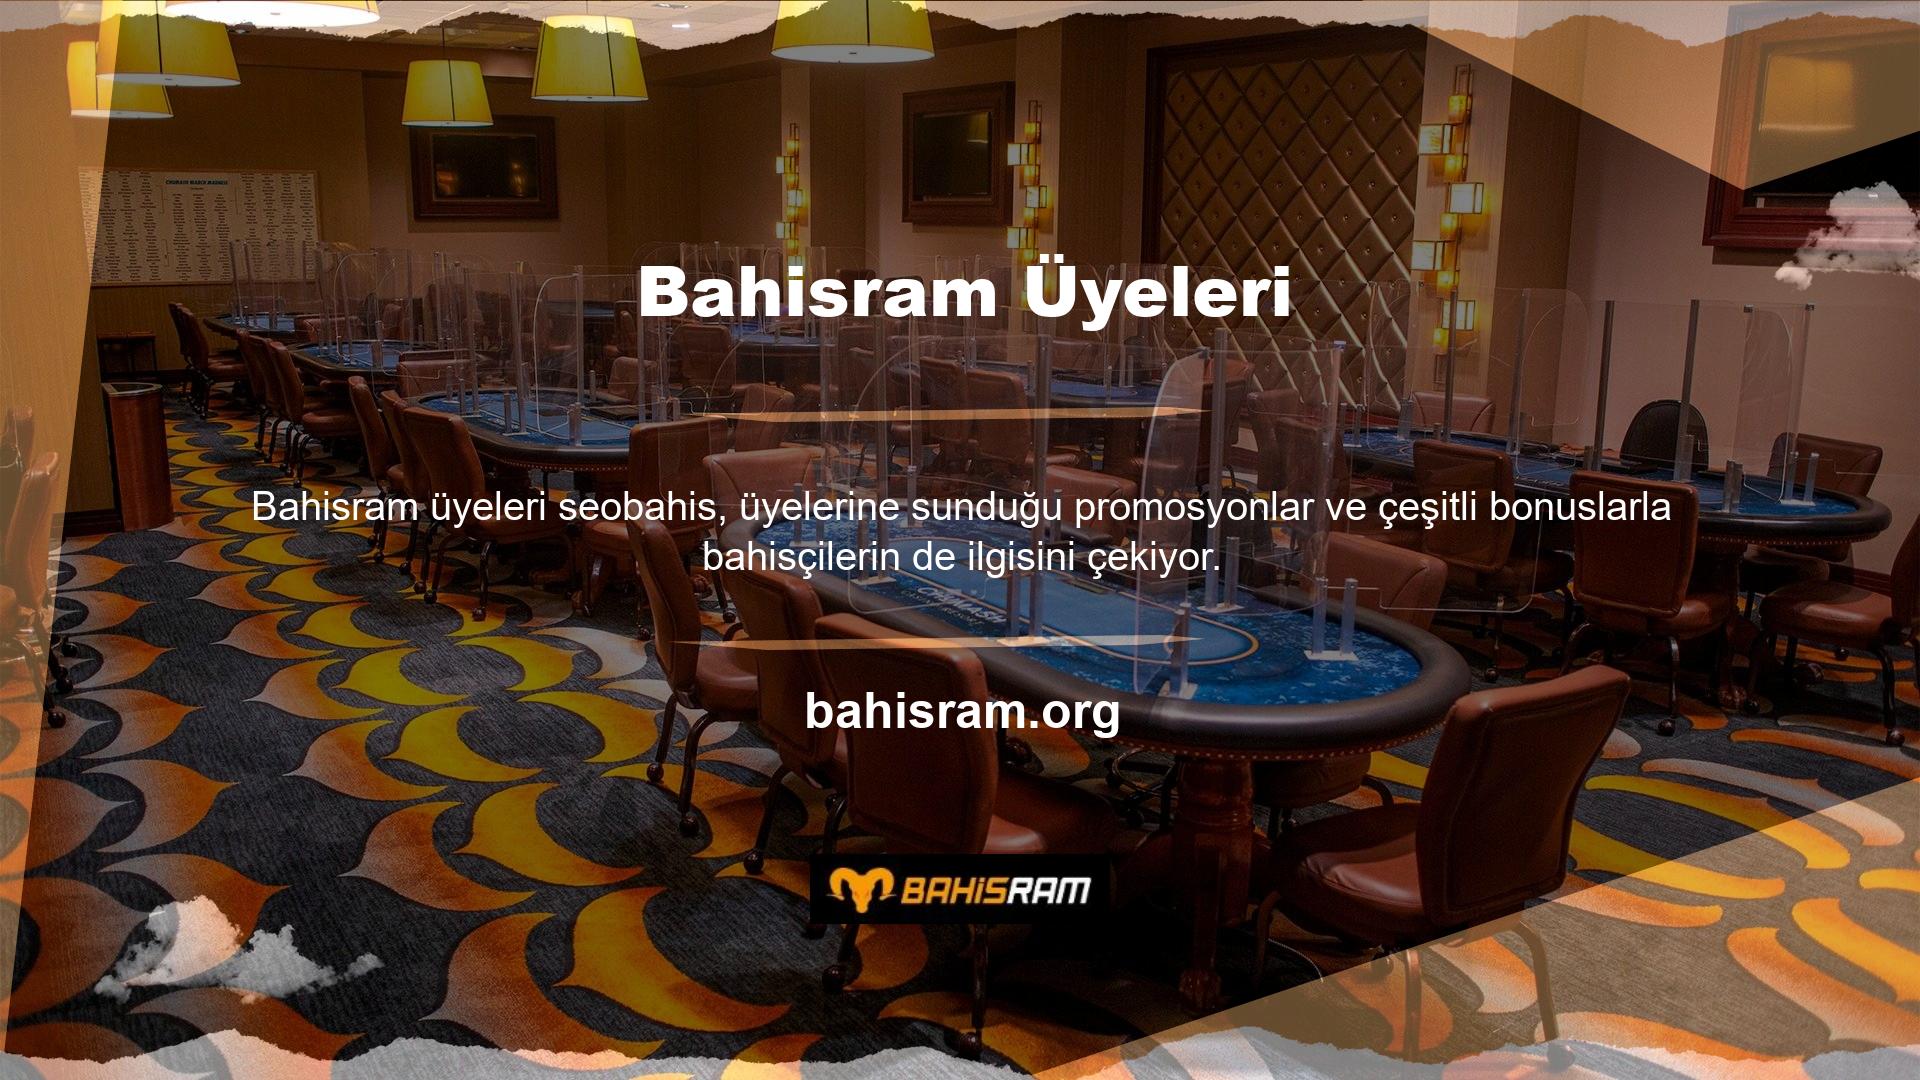 Üstelik yasadışı mobil giriş sitesi olan Bahisram çok güvenli ve sorunsuz erişim sağlar